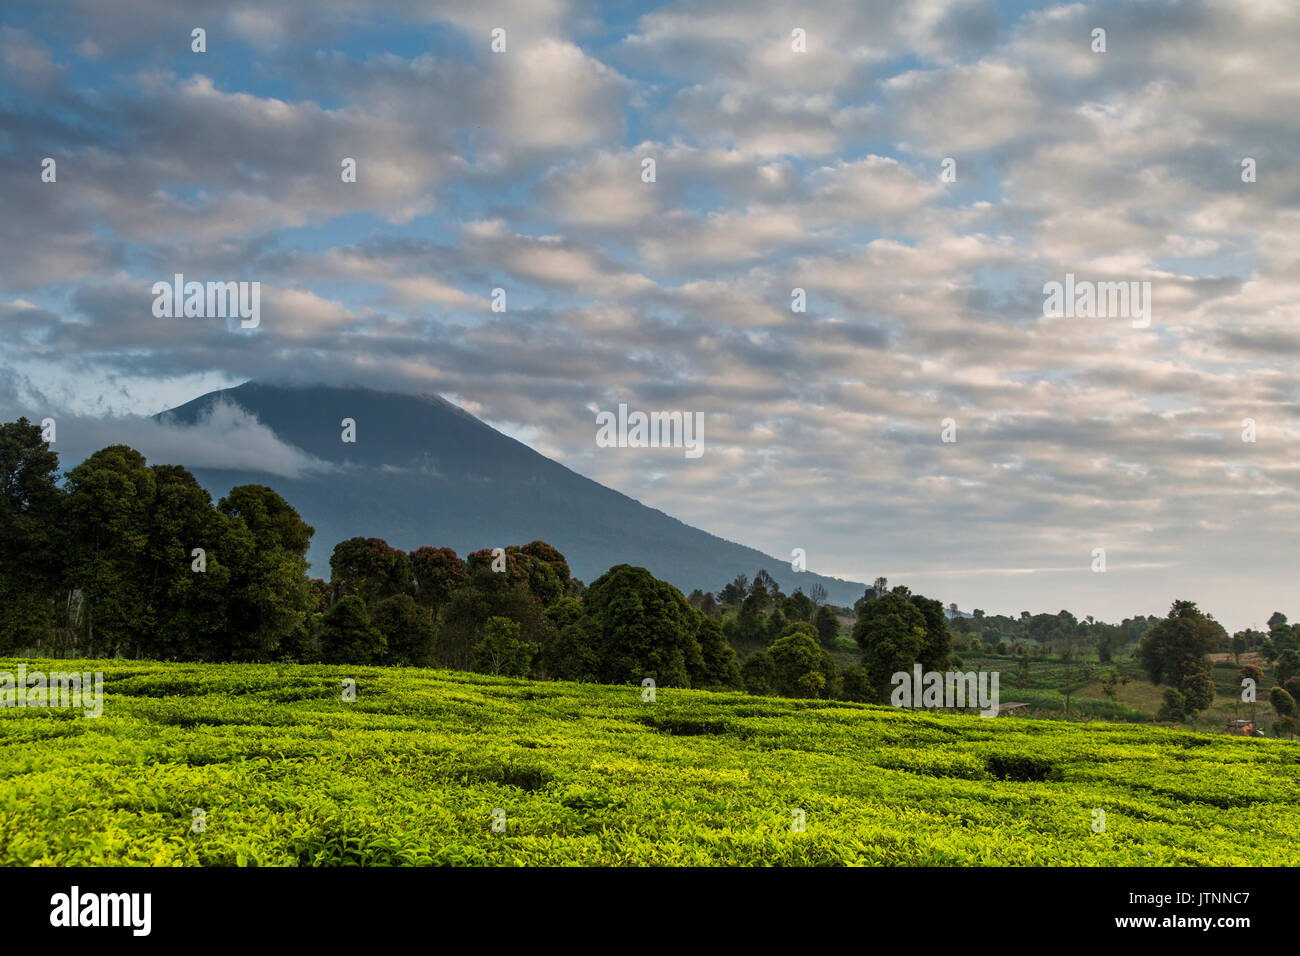 Campos de té, árboles y el volcán bajo un cielo azul de nubes irregulares en el valle Kerinci. Kerinci es una de las regiones más productivas de té en el mundo. Valle Kerinci, Sumatra, Indonesia Foto de stock